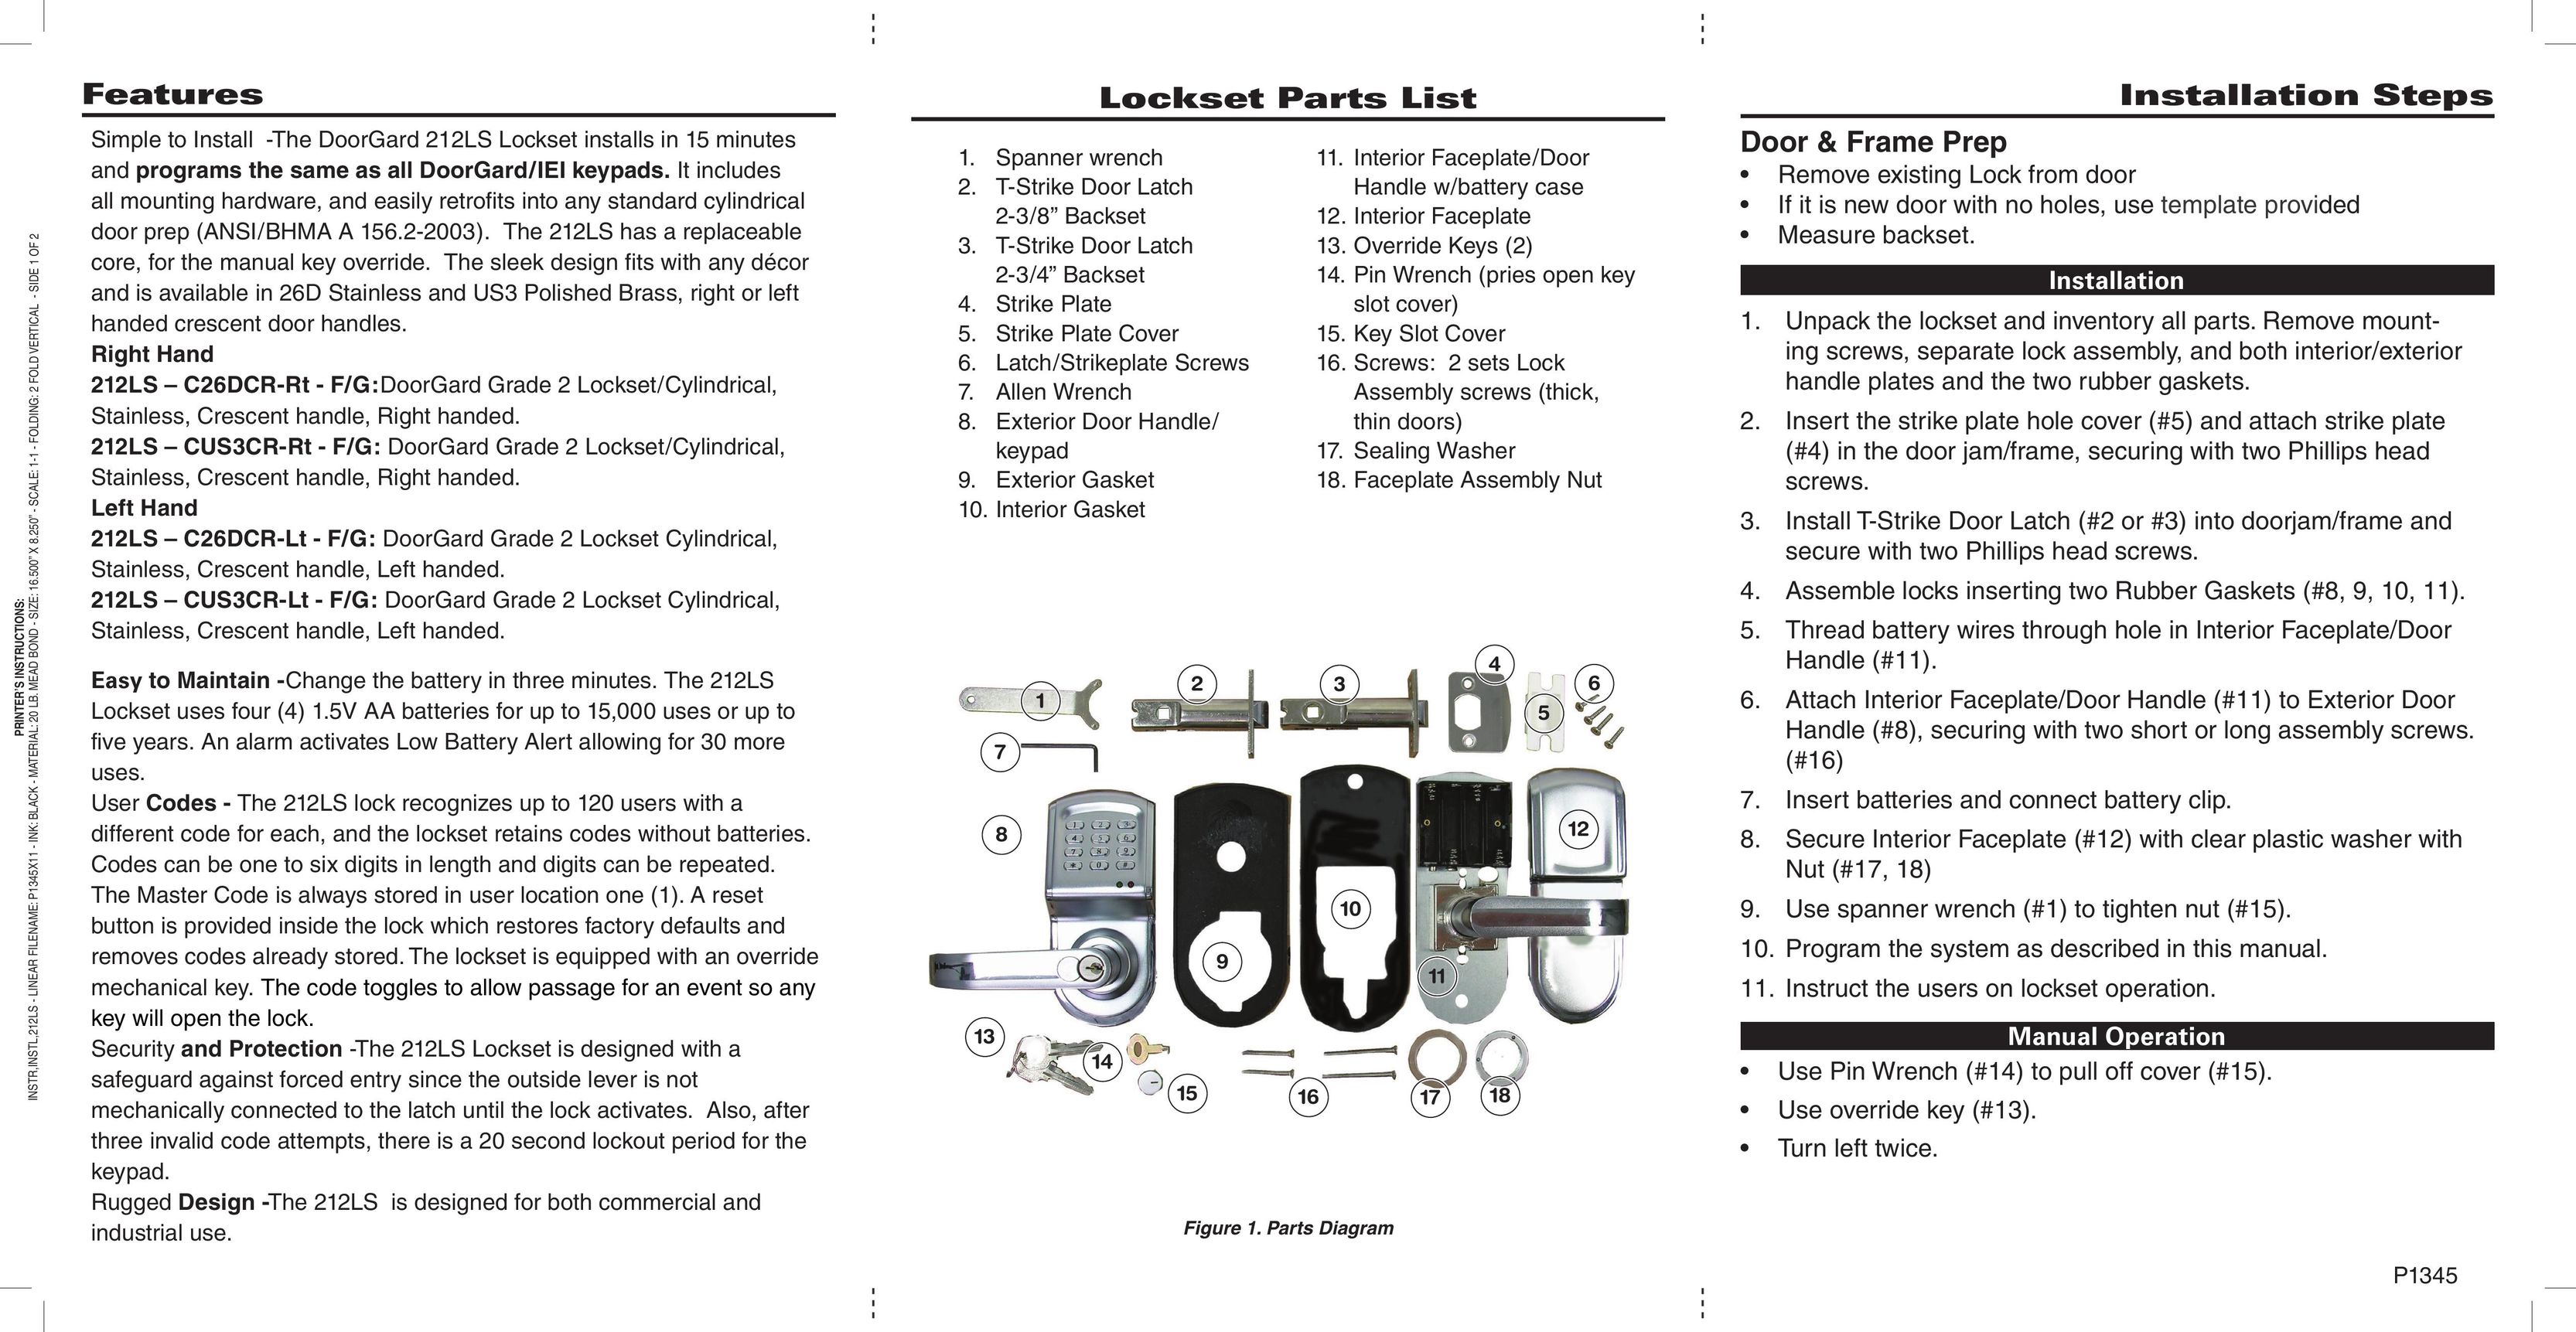 Linear 212LS-C26DCR-LT Door User Manual